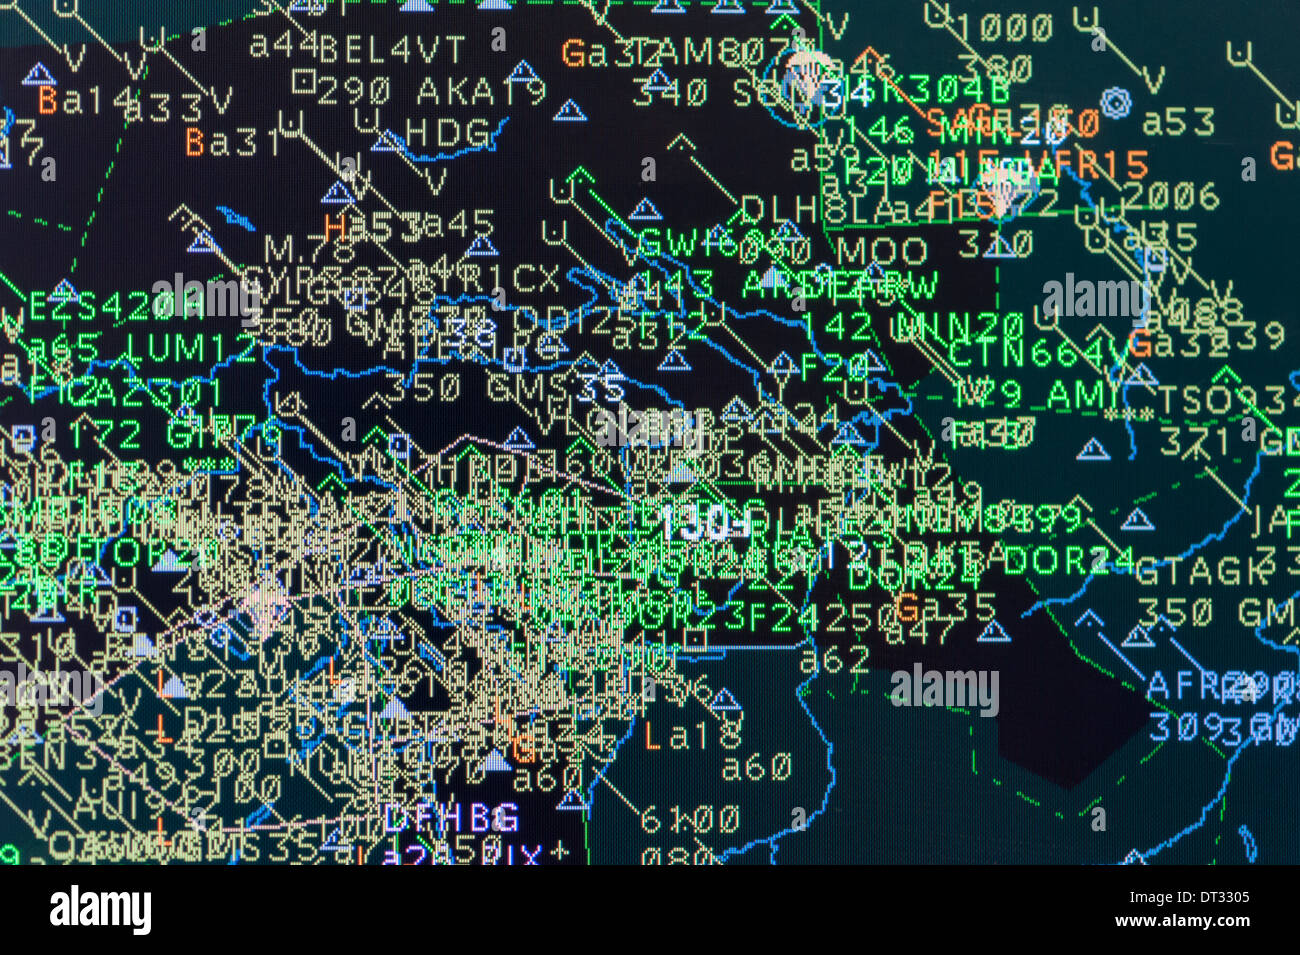 Los monitores de ordenador en el centro de control de tráfico aéreo de 'Skyguide' muestra las rutas de vuelo de aeronaves en el espacio aéreo ocupado de Suiza. Foto de stock